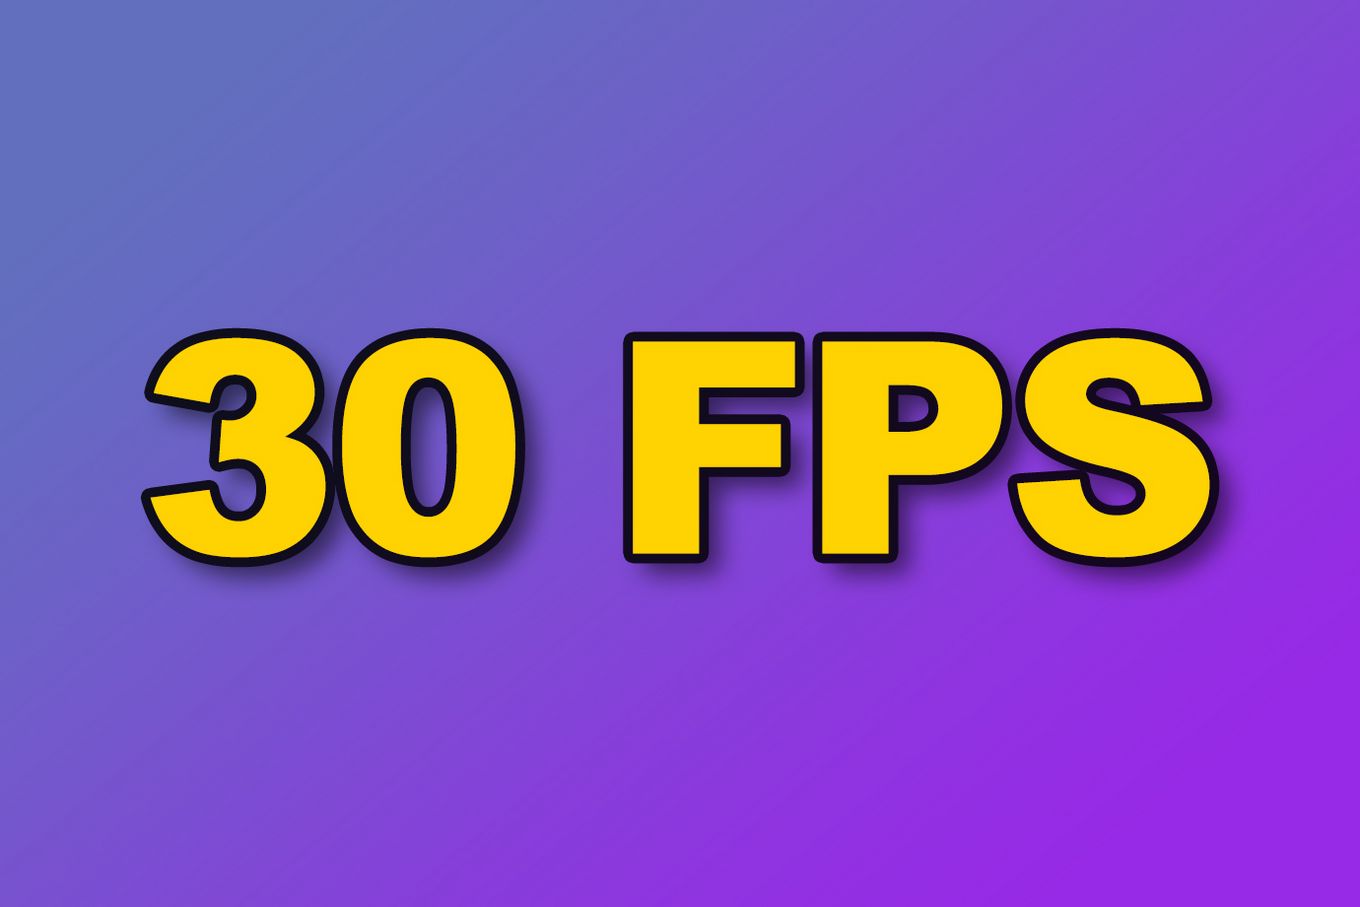 PS4 GPU frame rate